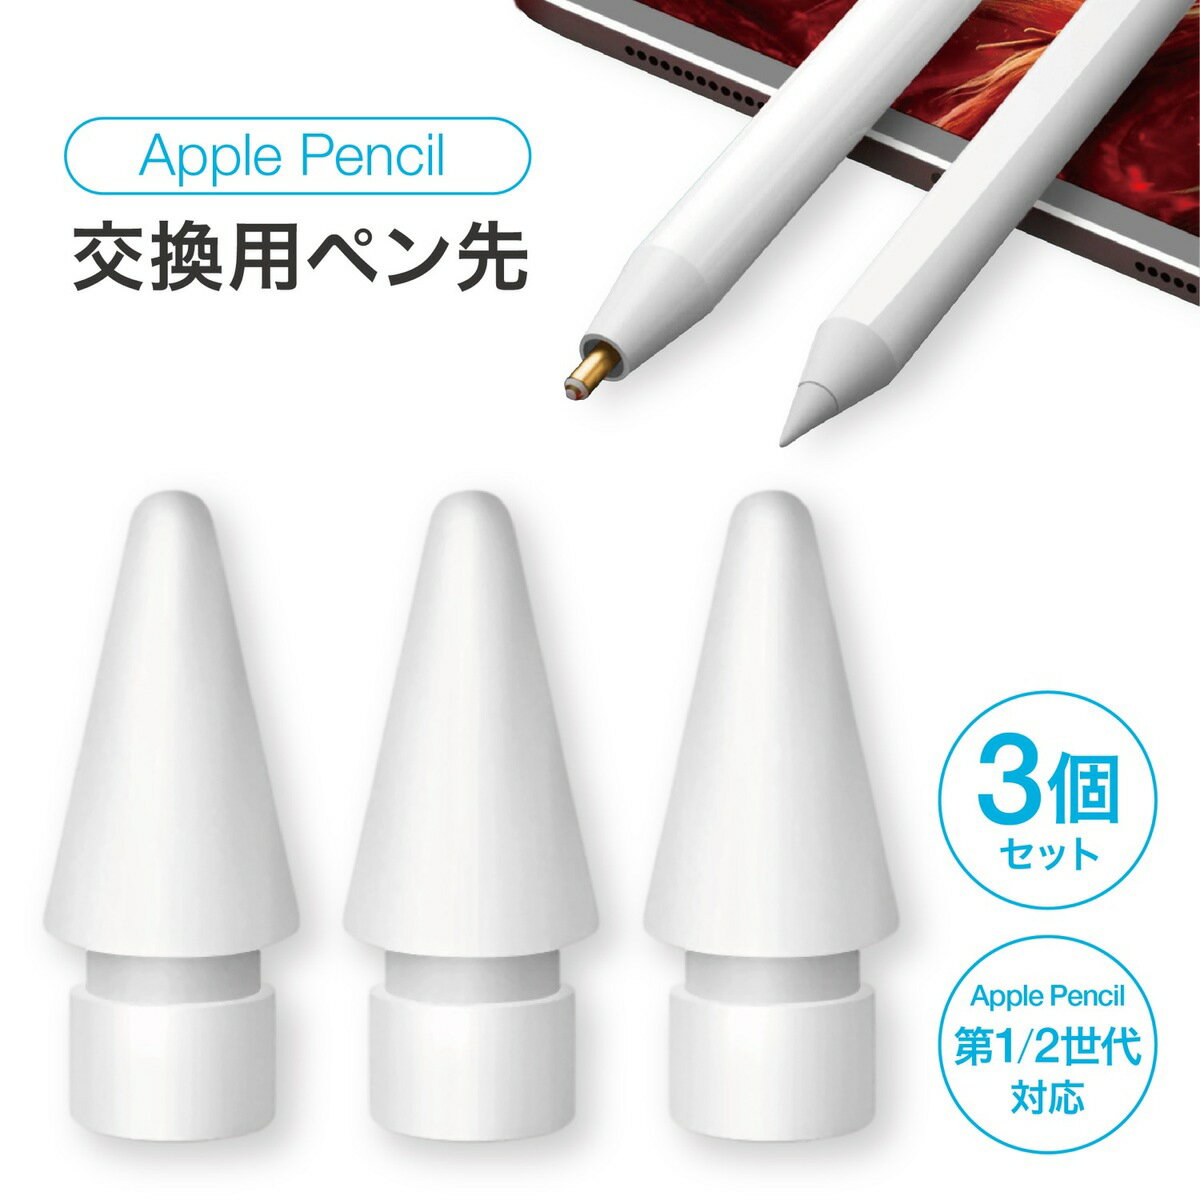 ApplePencil 交換用 互換 ぺン先 3個セット アップルペンシル ペン 交換 カバー iP ...